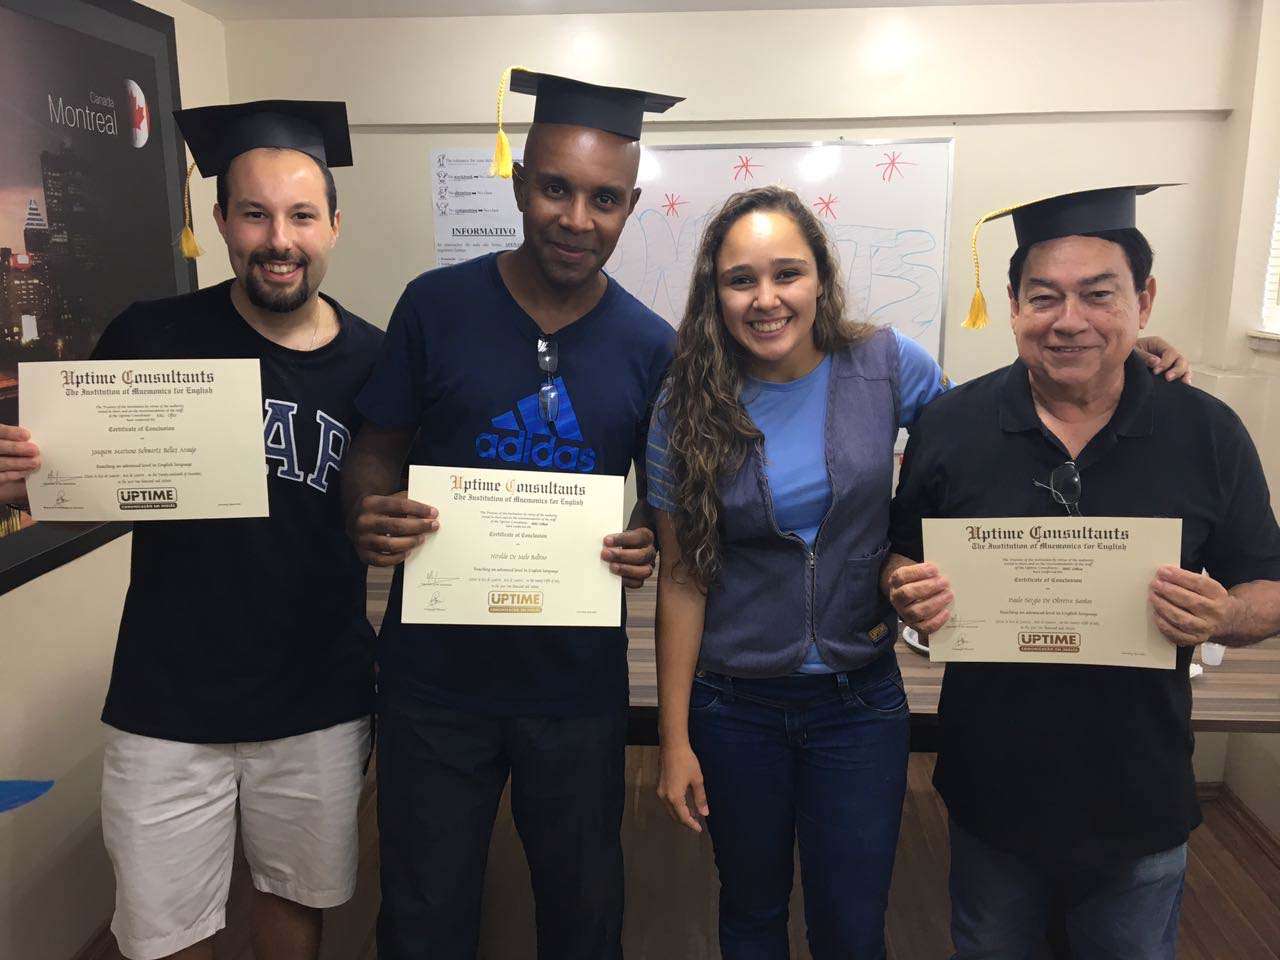 Novos fluentes em inglês celebram o certificado de conclusão do curso na UPTIME Recreio-Rio de Janeiro (RJ)